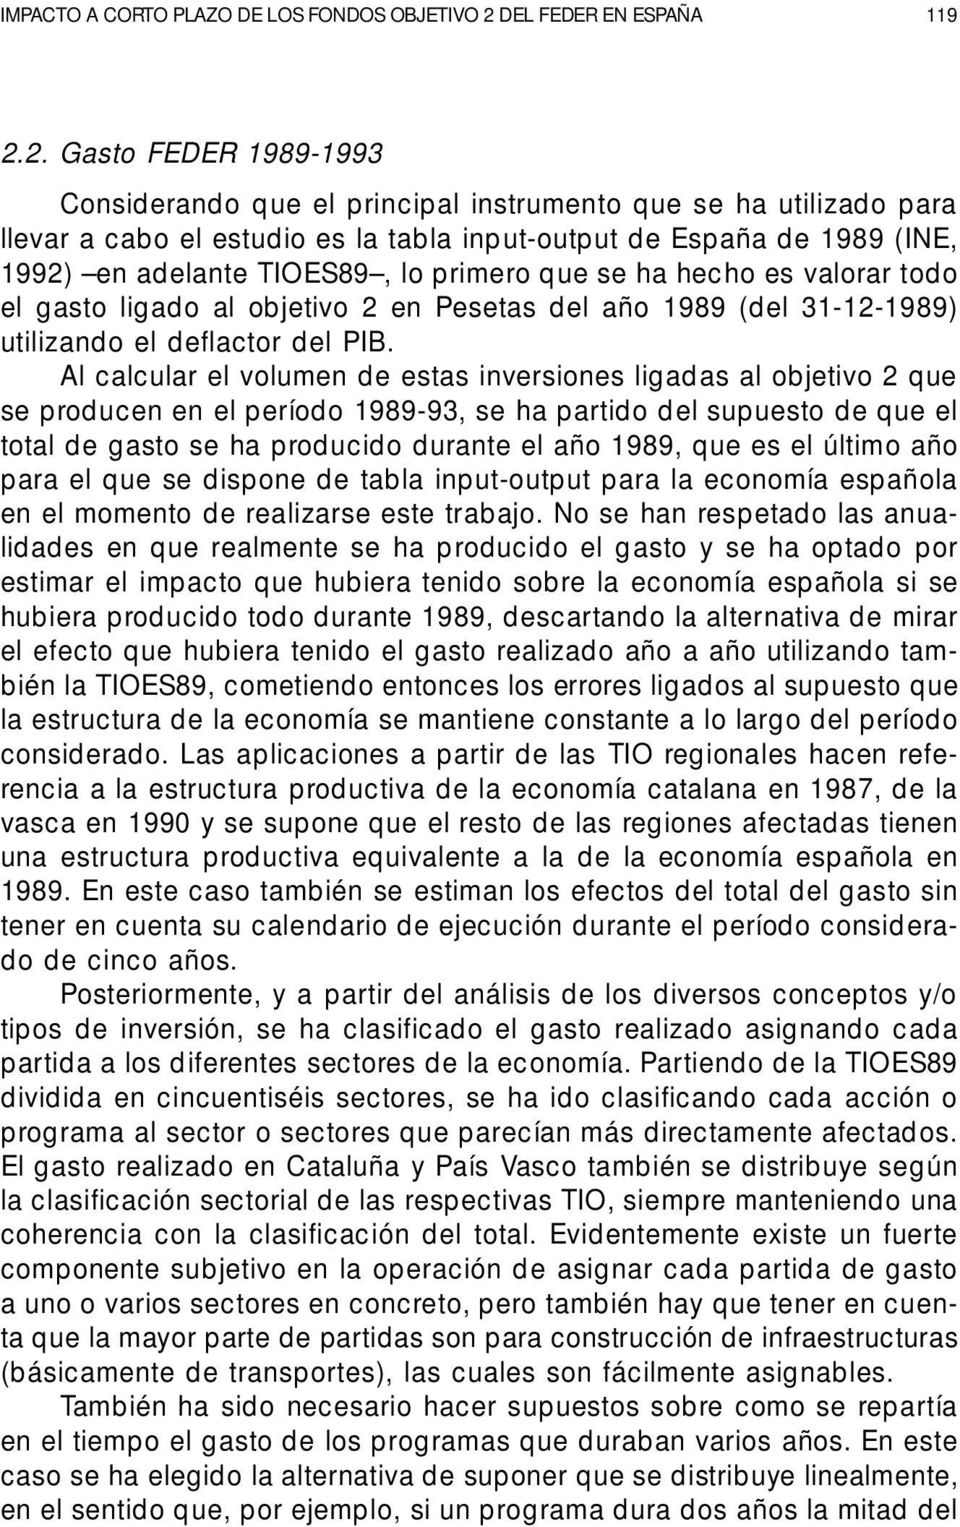 2. Gasto FEDER 1989-1993 Considerando que el principal instrumento que se ha utilizado para llevar a cabo el estudio es la tabla input-output de España de 1989 (INE, 1992) en adelante TIOES89, lo